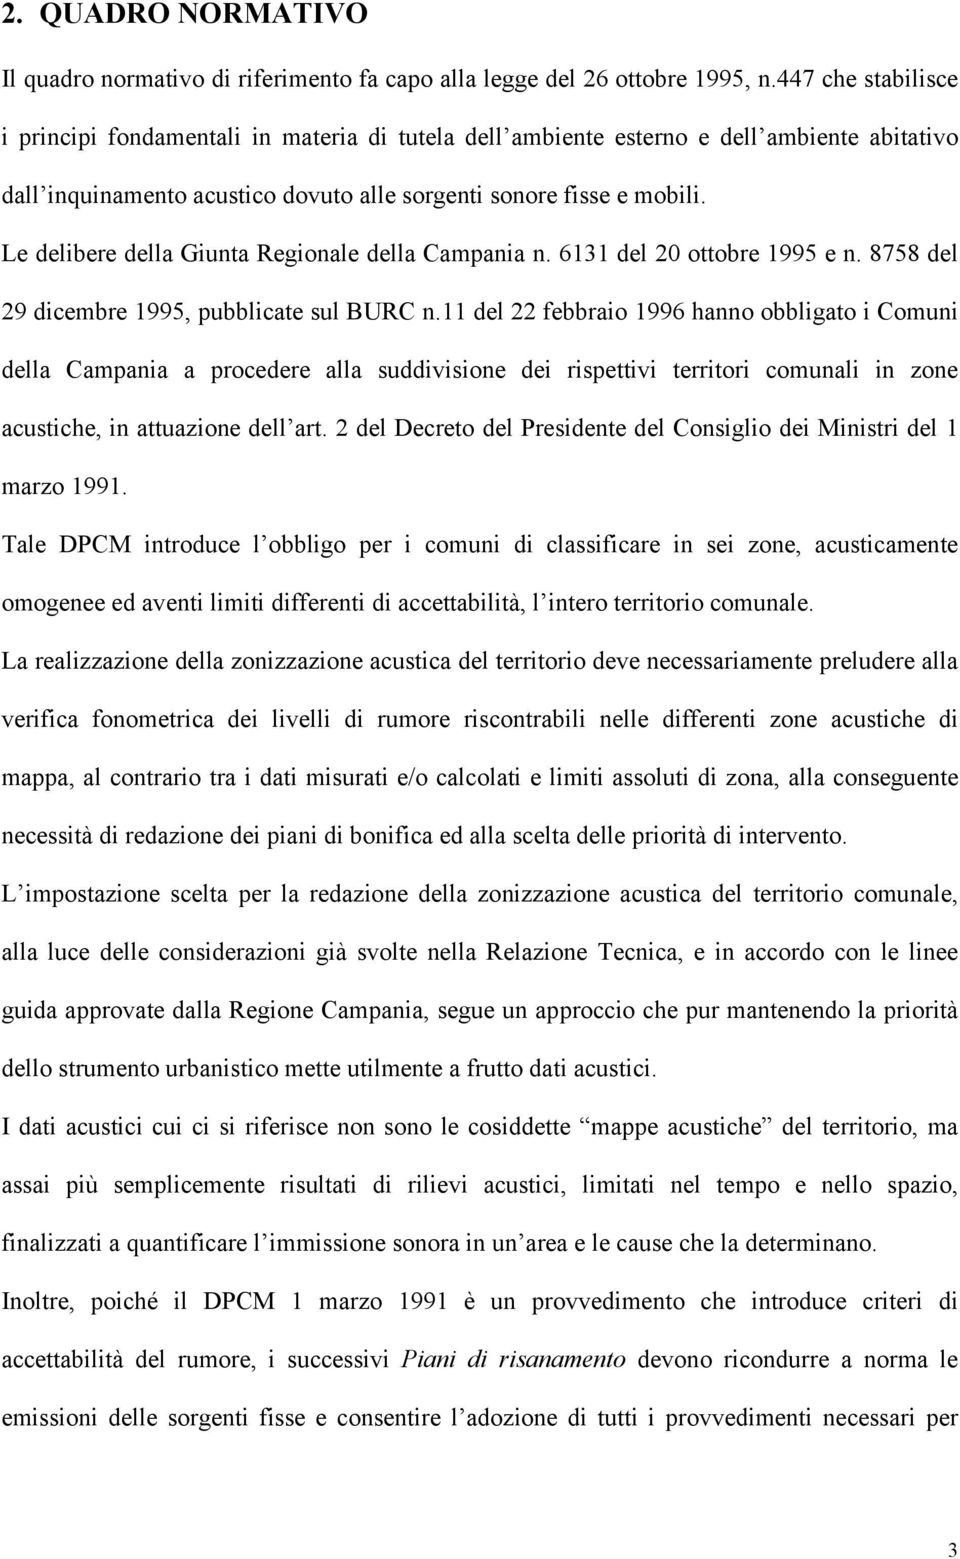 Le delibere della Giunta Regionale della Campania n. 6131 del 20 ottobre 1995 e n. 8758 del 29 dicembre 1995, pubblicate sul BURC n.